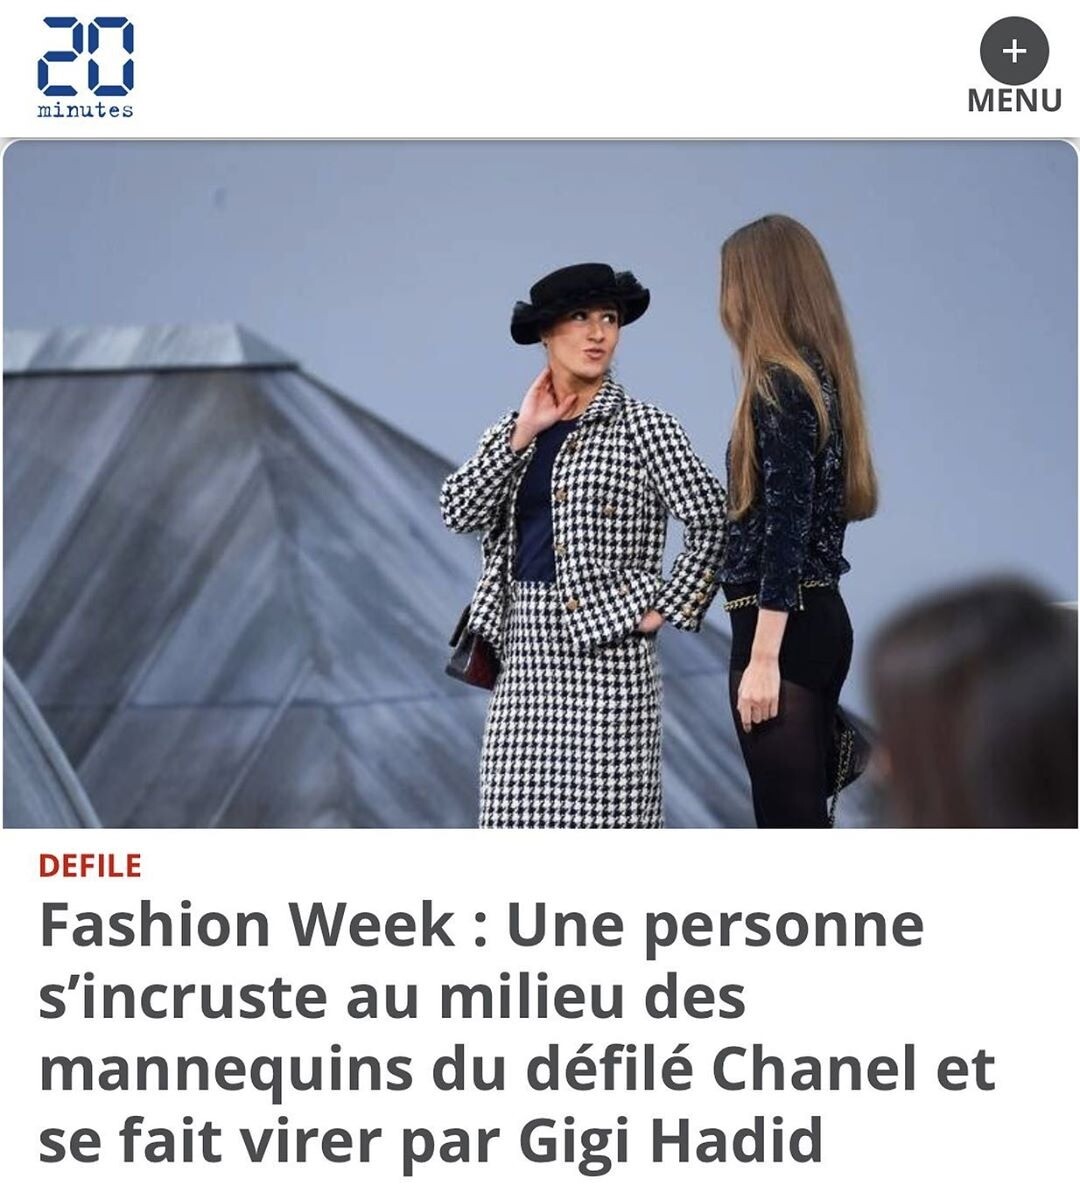   Chanel          ()